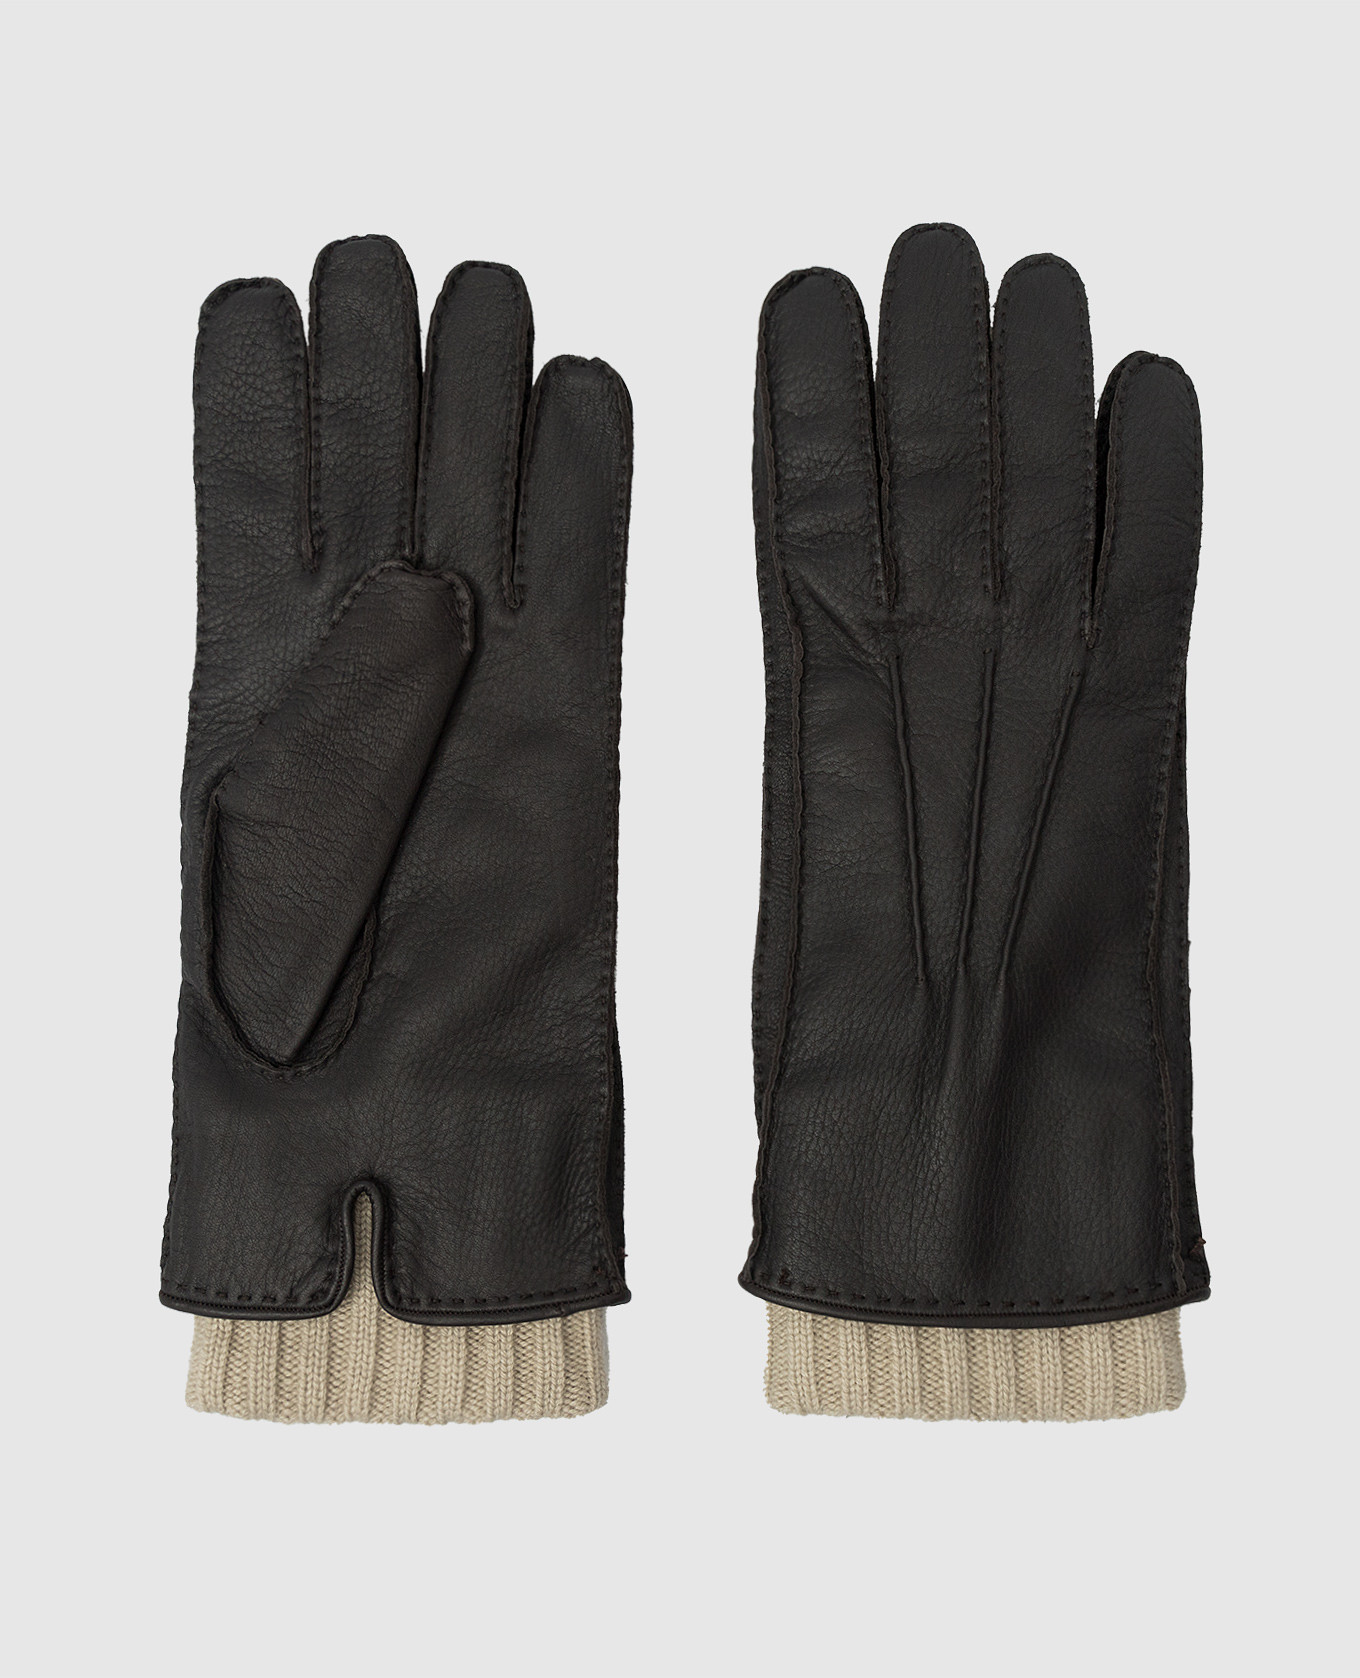 Темно-коричневые кожаные перчатки